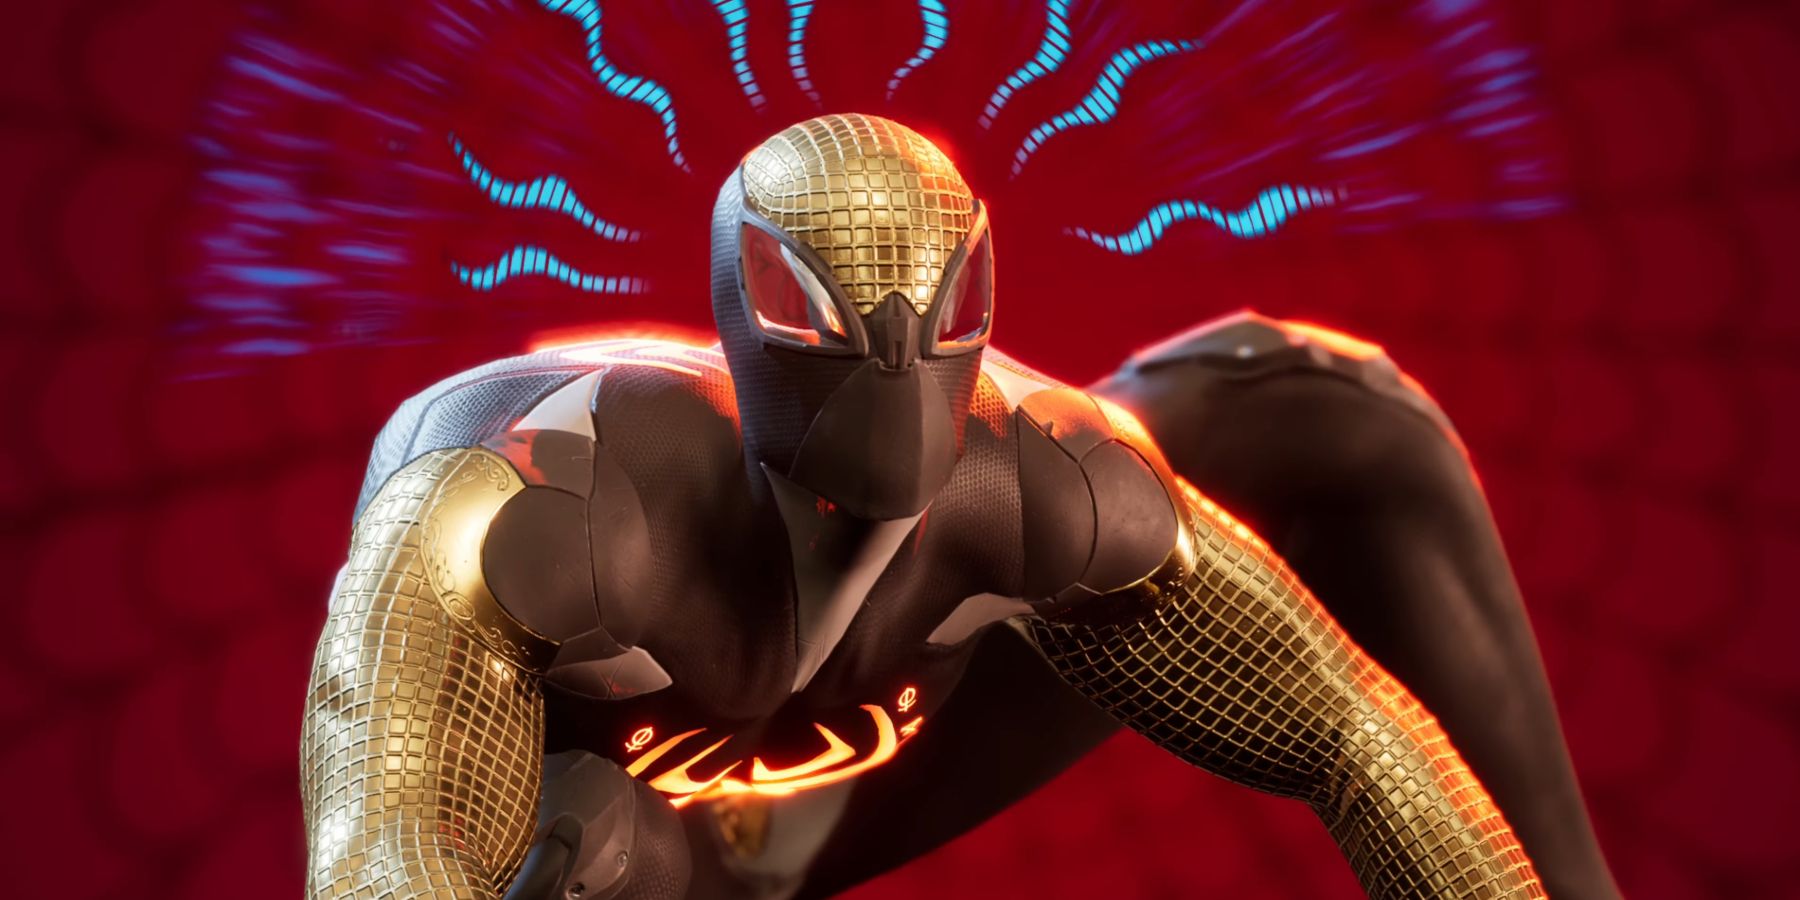 Spider-Man Gameplay Showcase  Marvel's Midnight Suns 